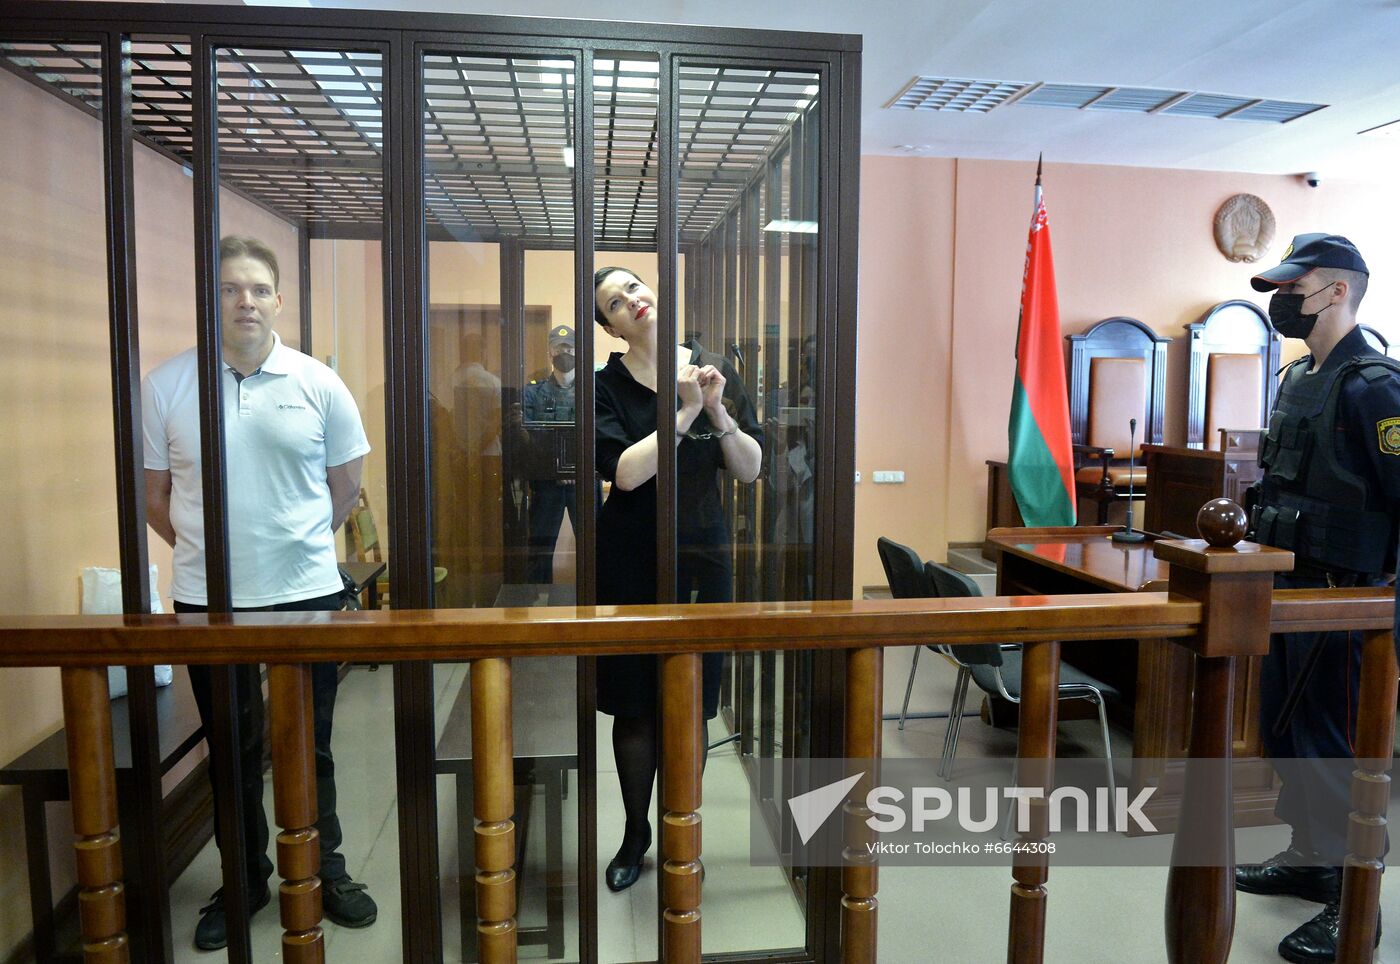 Belarus Opposition Figures Trial